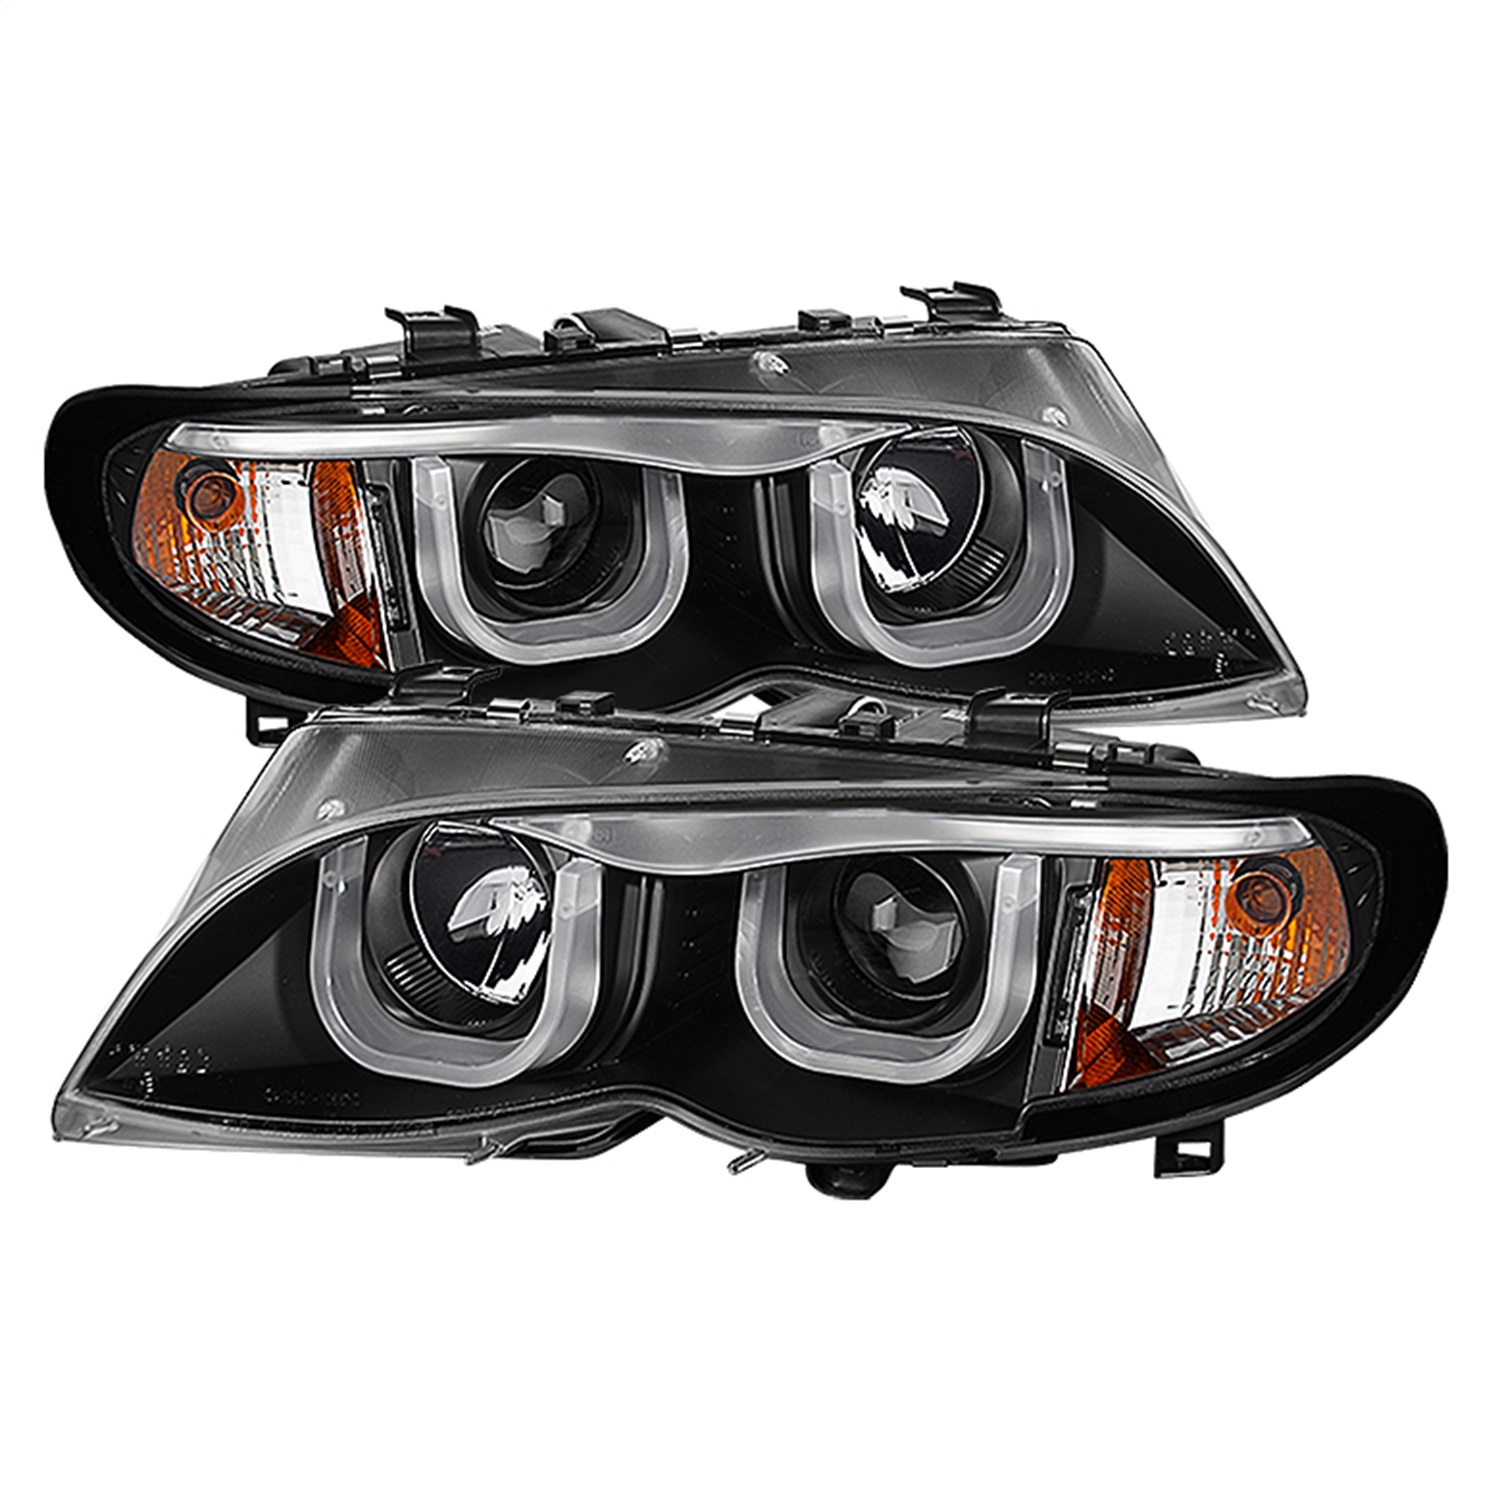 Spyder Auto 5031877 DRL Projector Headlights Fits 320i 325i 325xi 330i 330xi